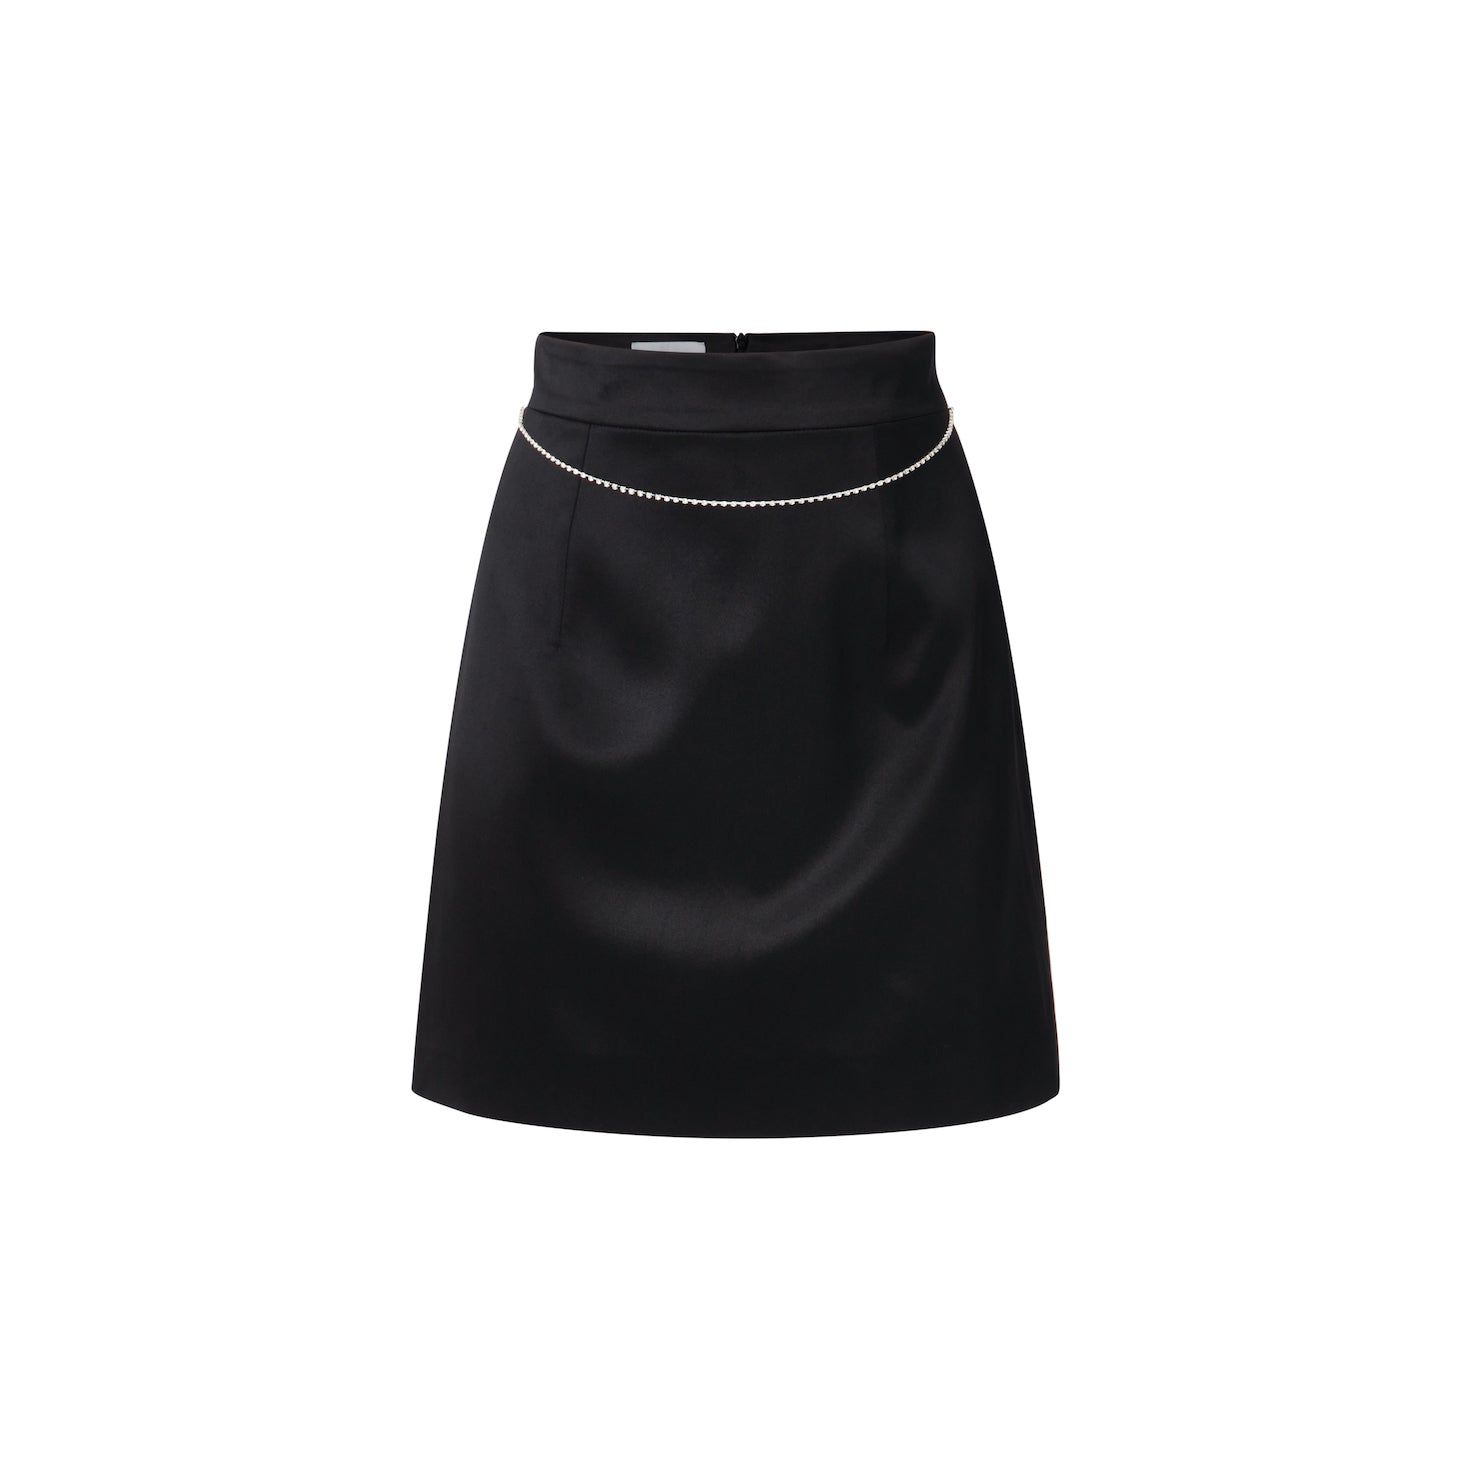 Mandibreeze resort wear festive black 100% silk skirt a-line skirt party rhinestone details partyset festkjol svart silkes kjol